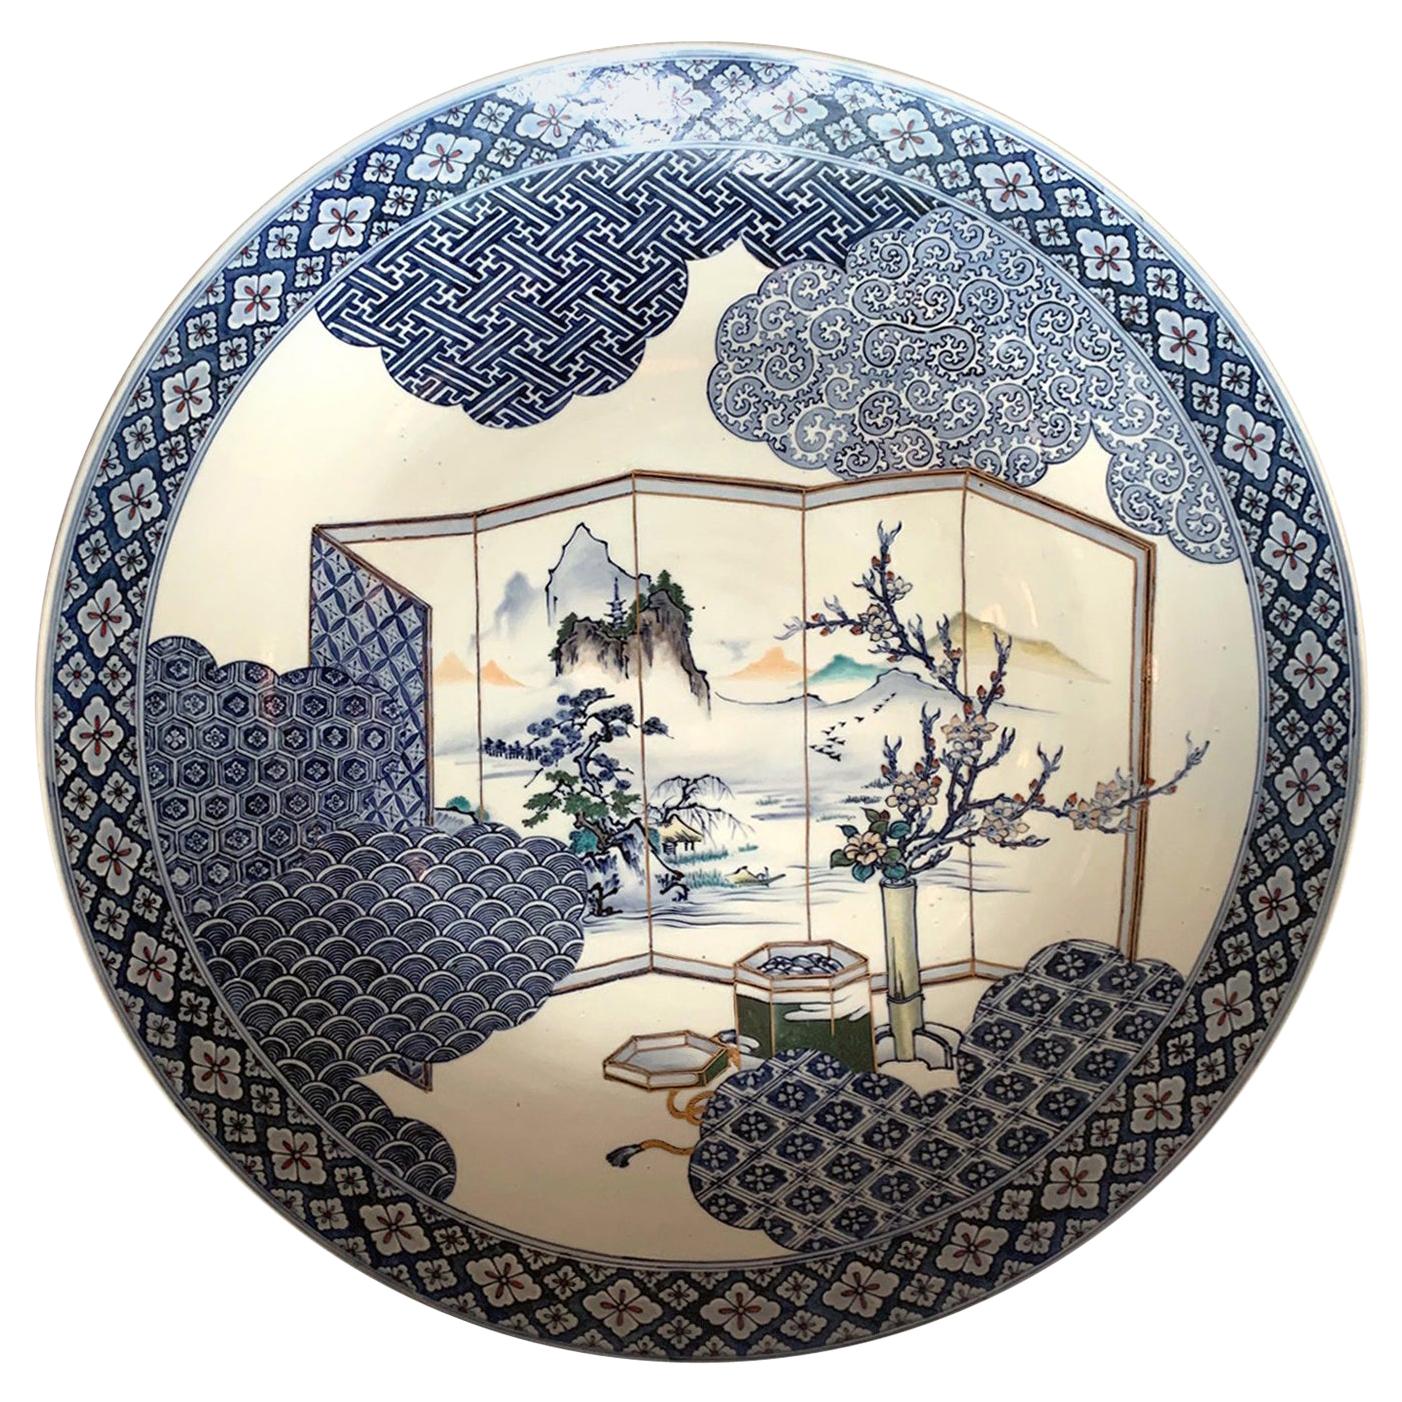 Gran Plato de Porcelana Japonesa de Presentación Arita Periodo Meiji